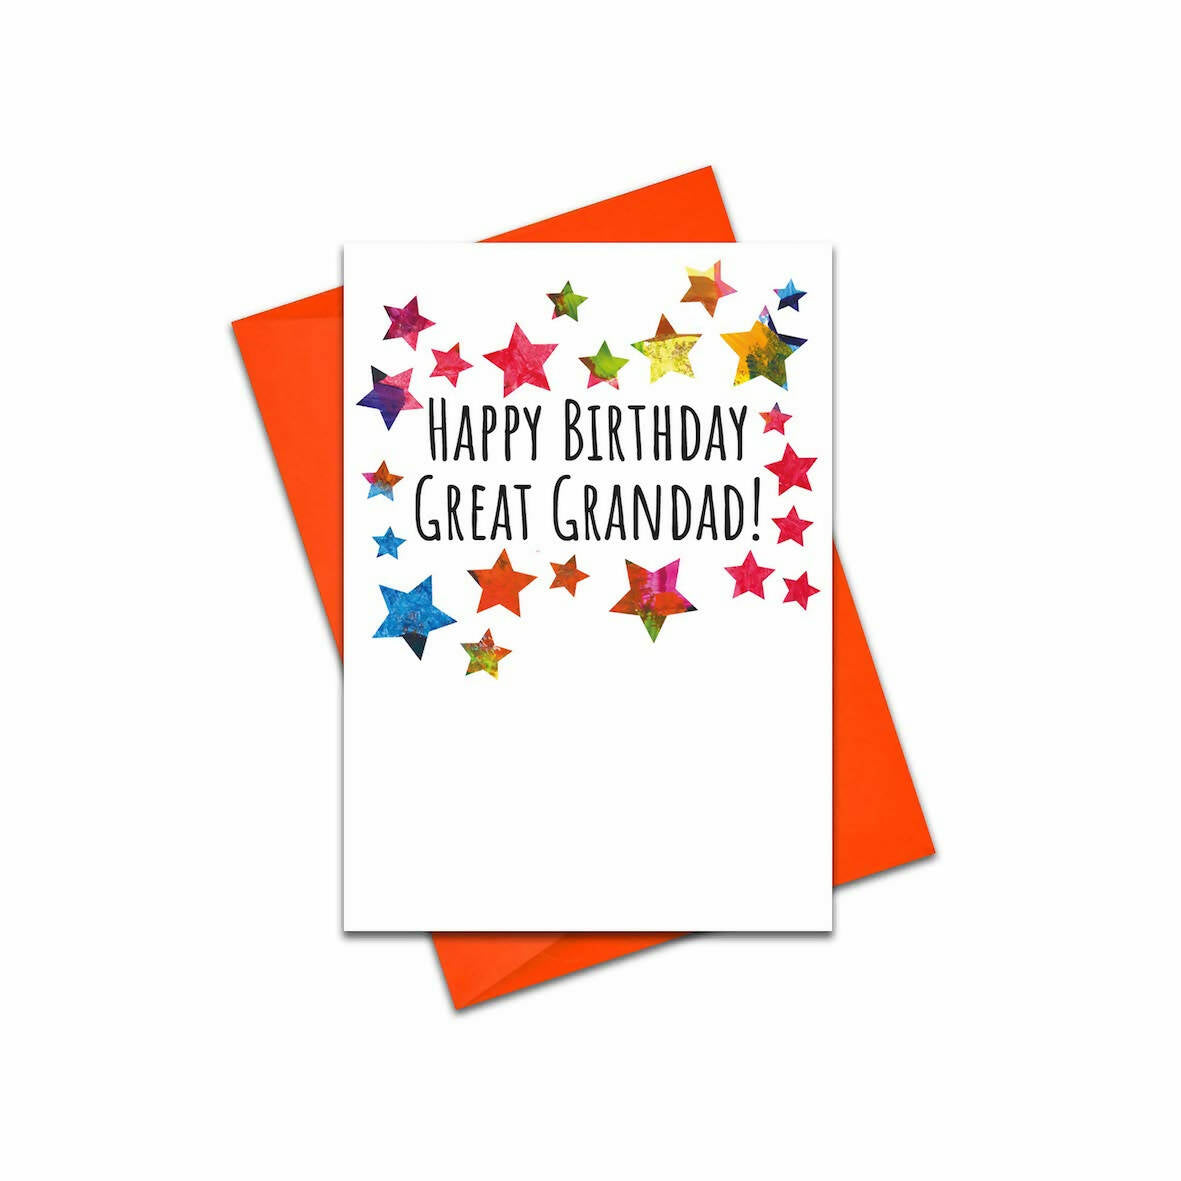 Great Grandad Birthday Card - Modern and Colourful Birthday Card